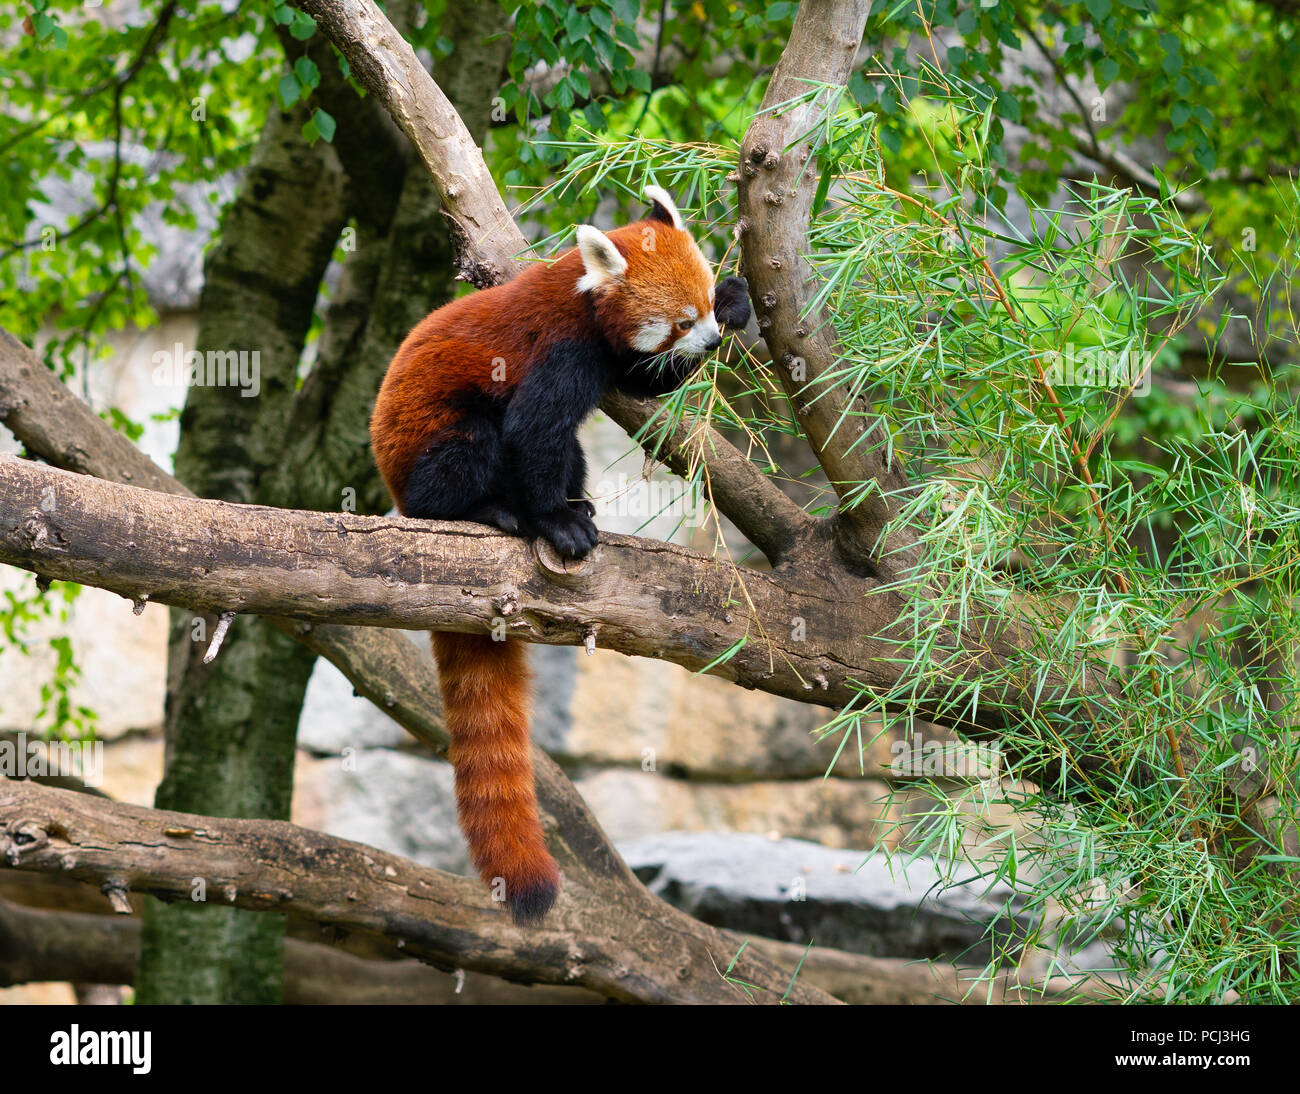 Le panda rouge ou petit panda Ailurus fulgens manger des feuilles de bambou on tree branch Banque D'Images